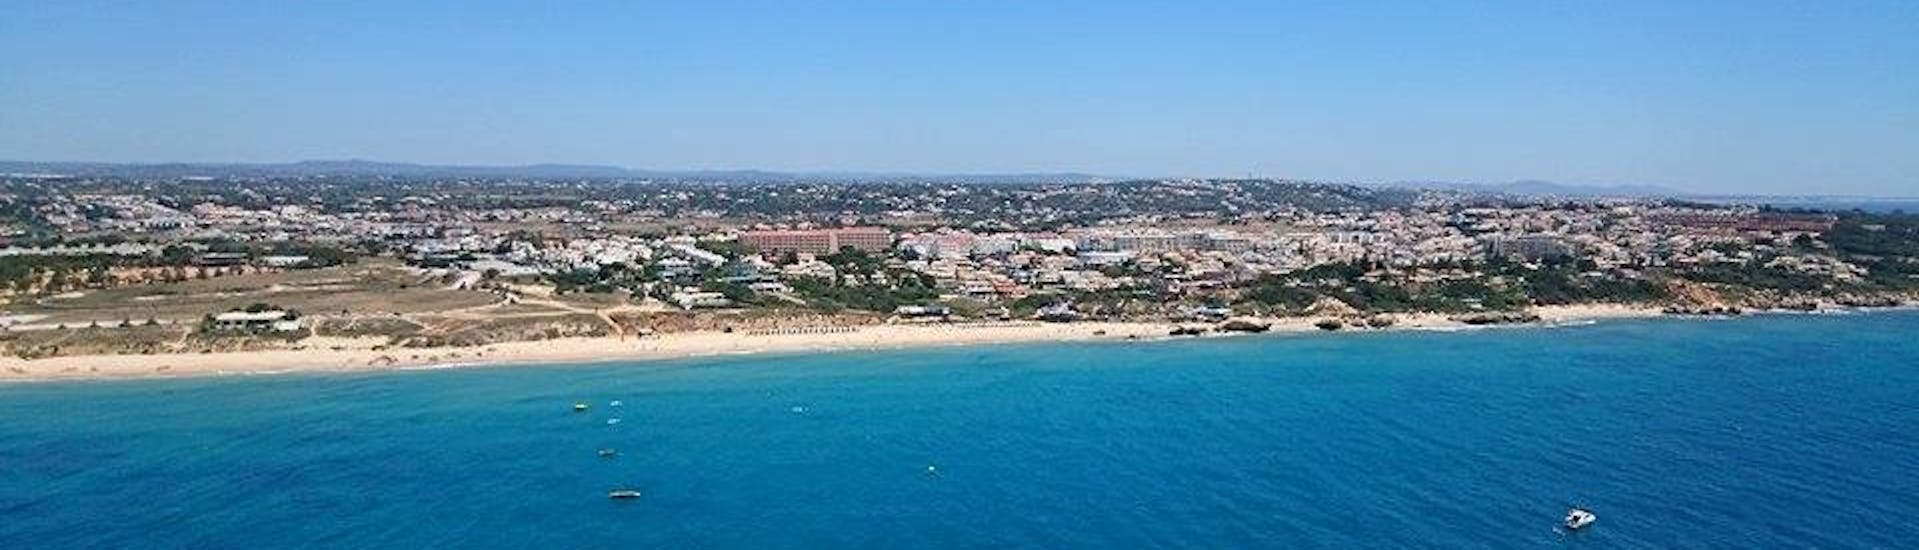 De kust van de Algarve en het strand van Albufeira vanuit de lucht waarvan de deelnemers kunnen genieten tijdens de Zeekajakken op het strand van Galé in Albufeira met Nautifun Galé.